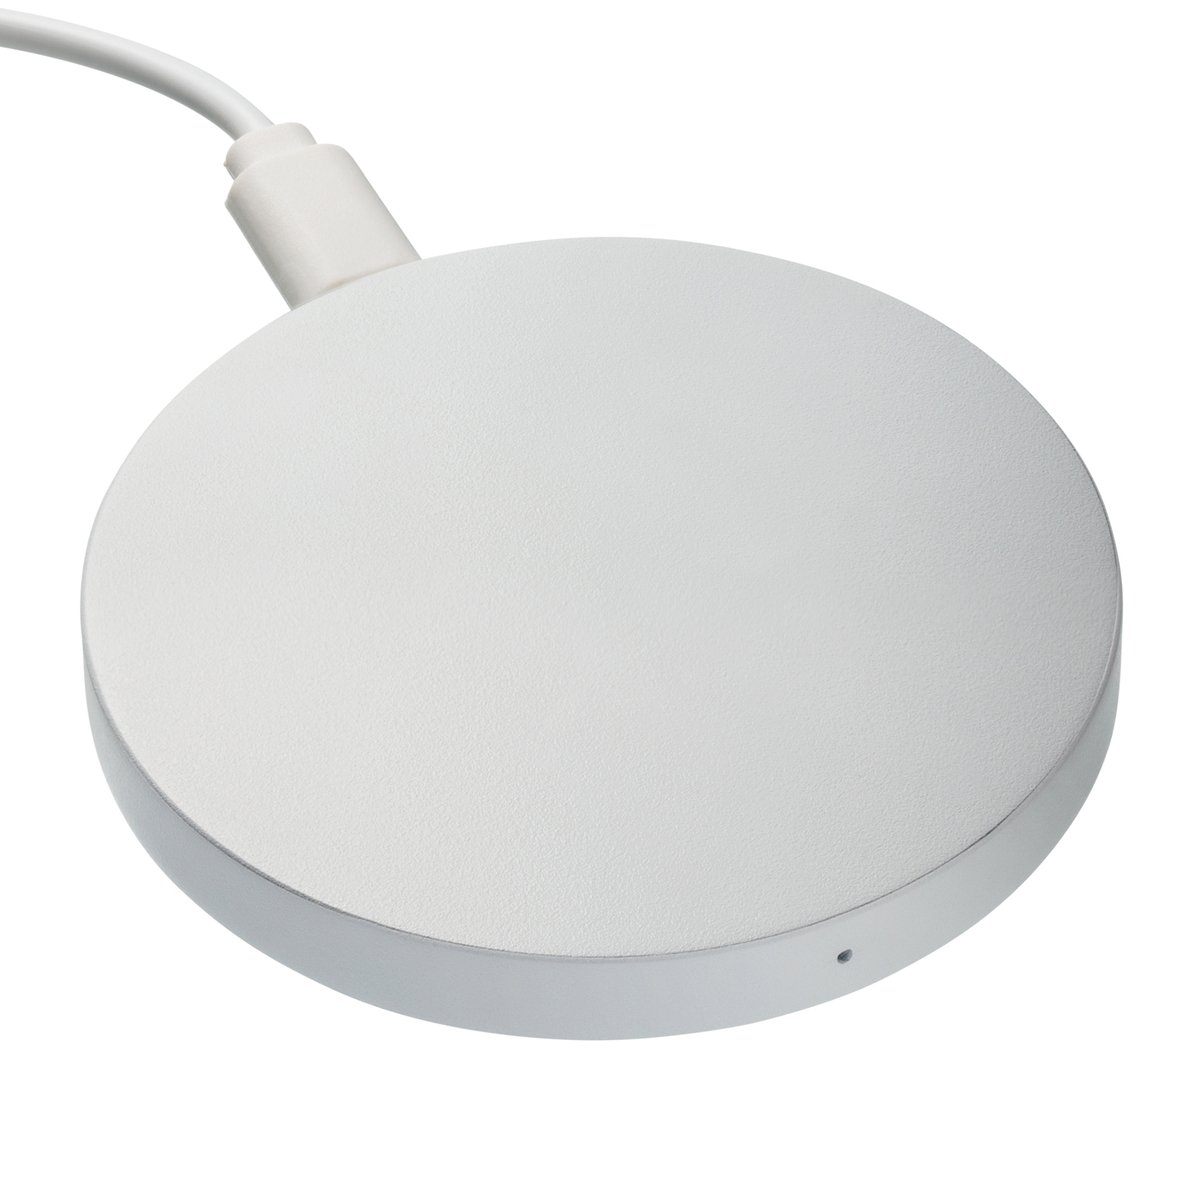 Wireless Charger REEVES-COVINGTON white 5 Watt, white, 5 Watt